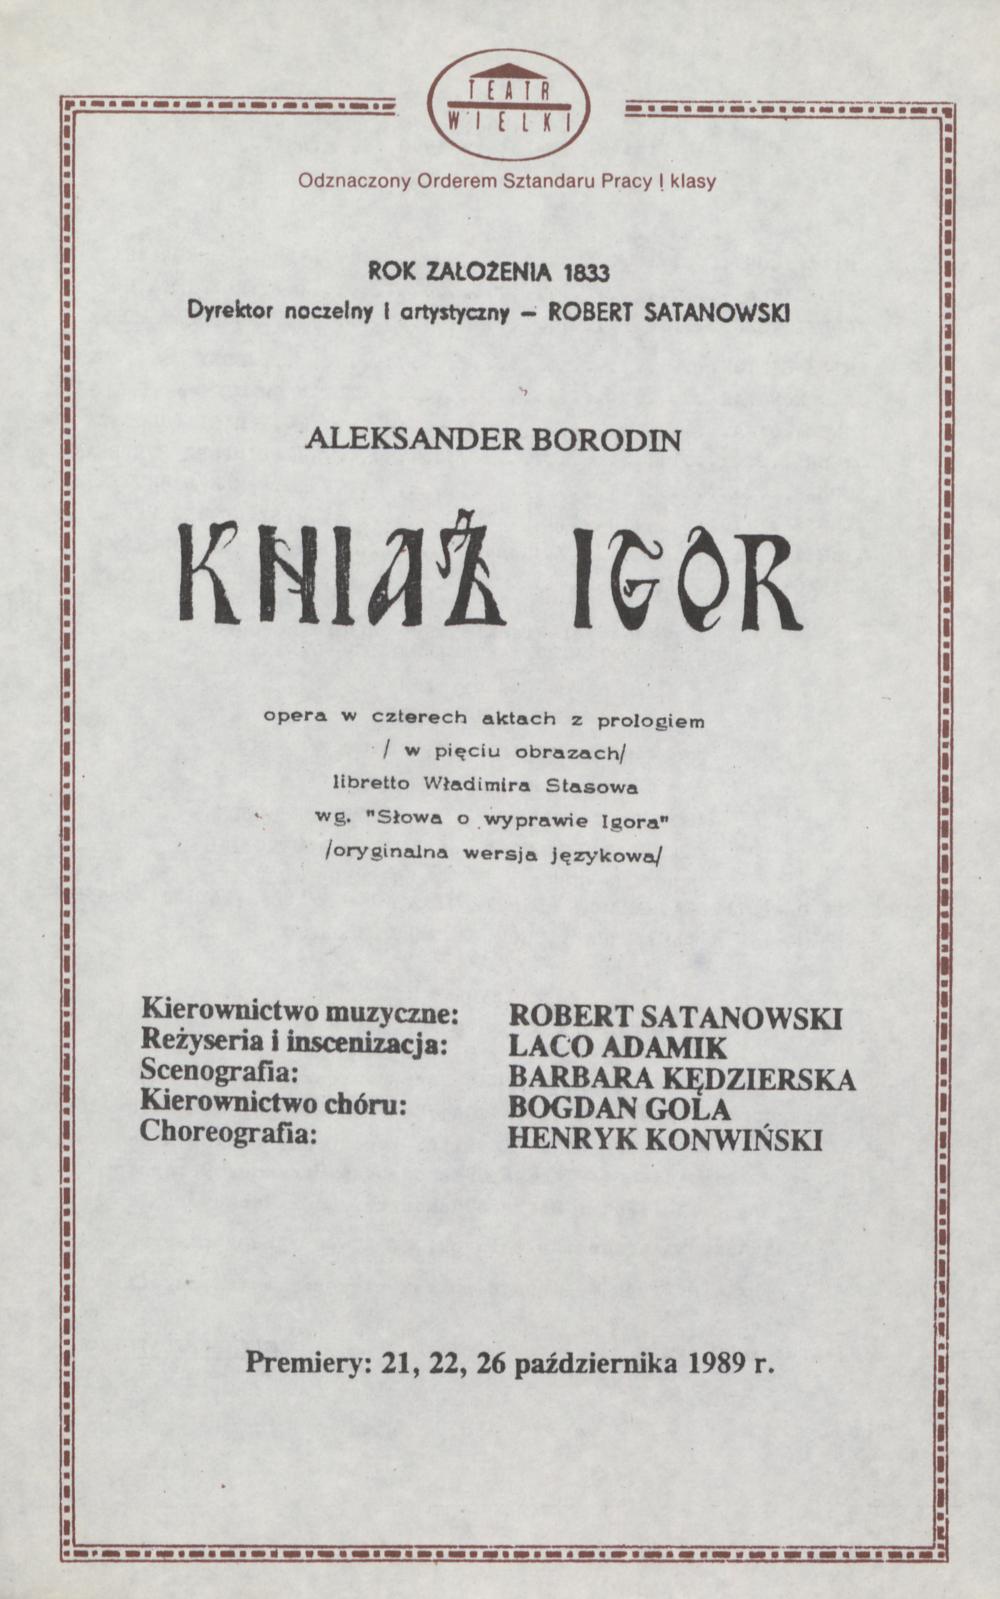 Wkładka obsadowa „Kniaź Igor” Aleksander Borodin 16-02-1990